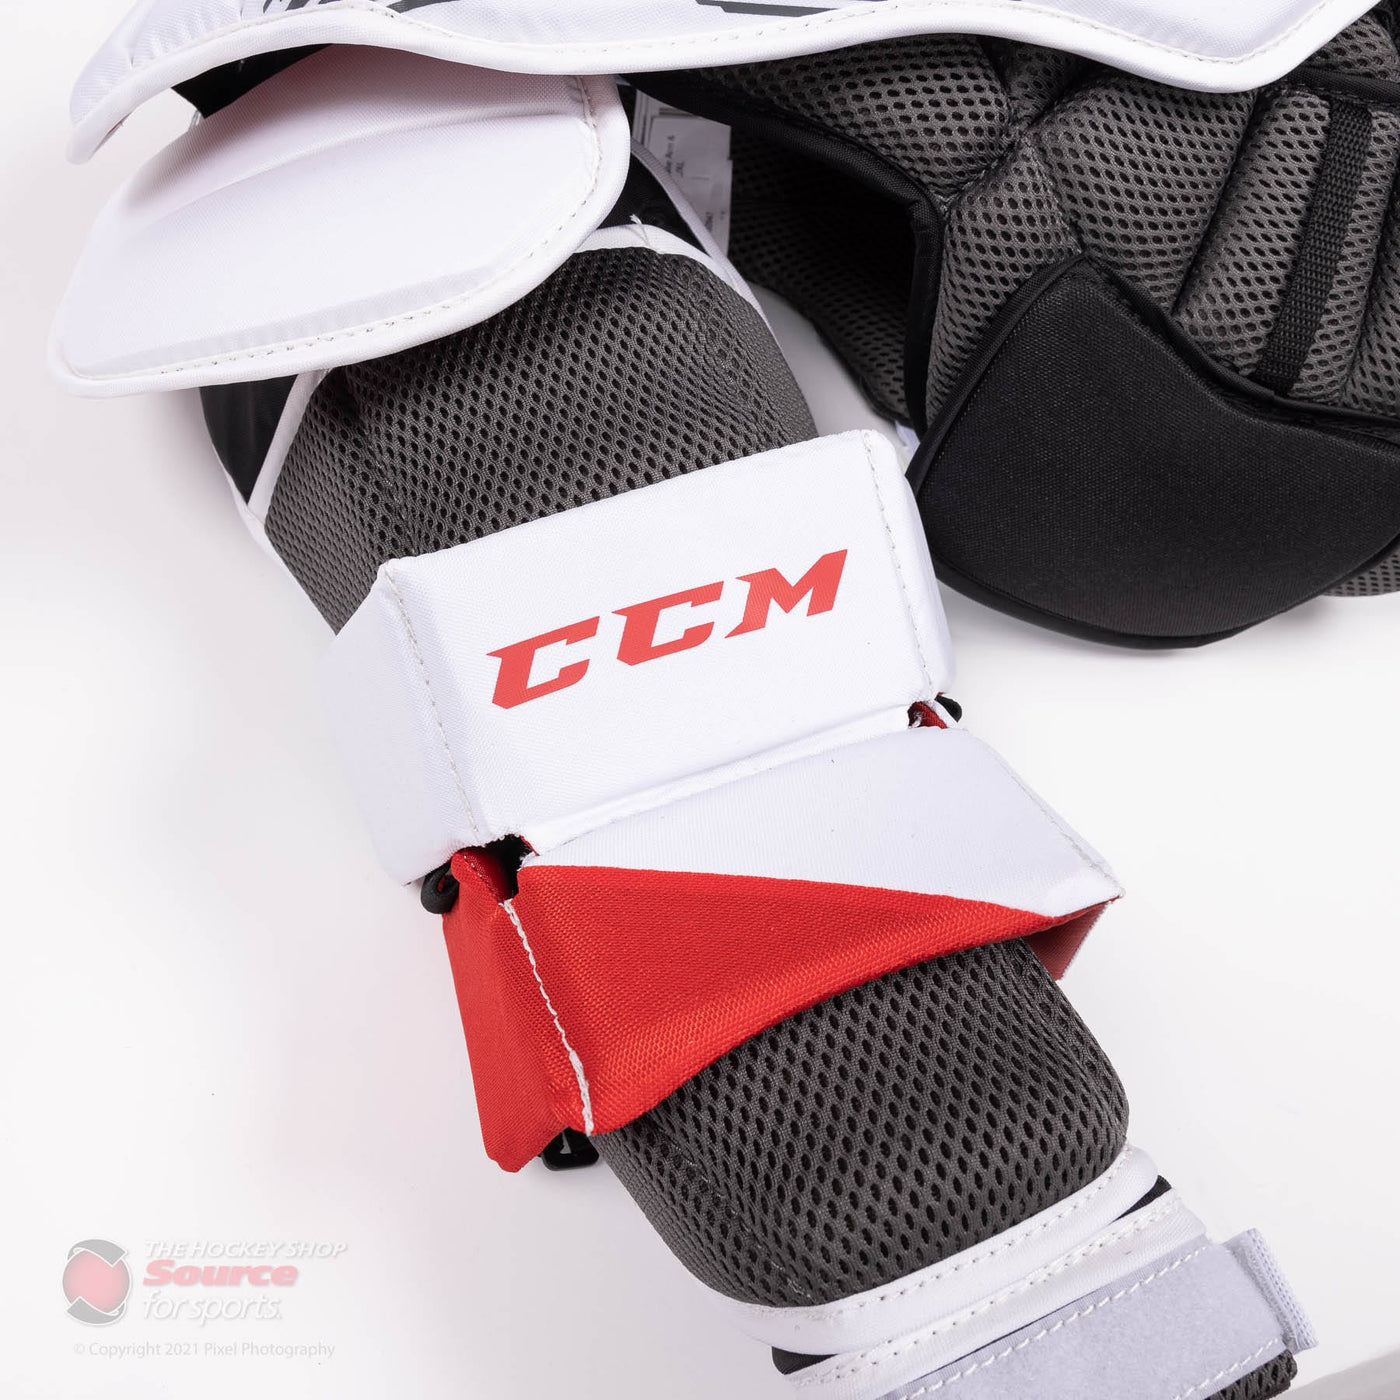 CCM Extreme Flex E5.5 Junior Chest & Arm Protector